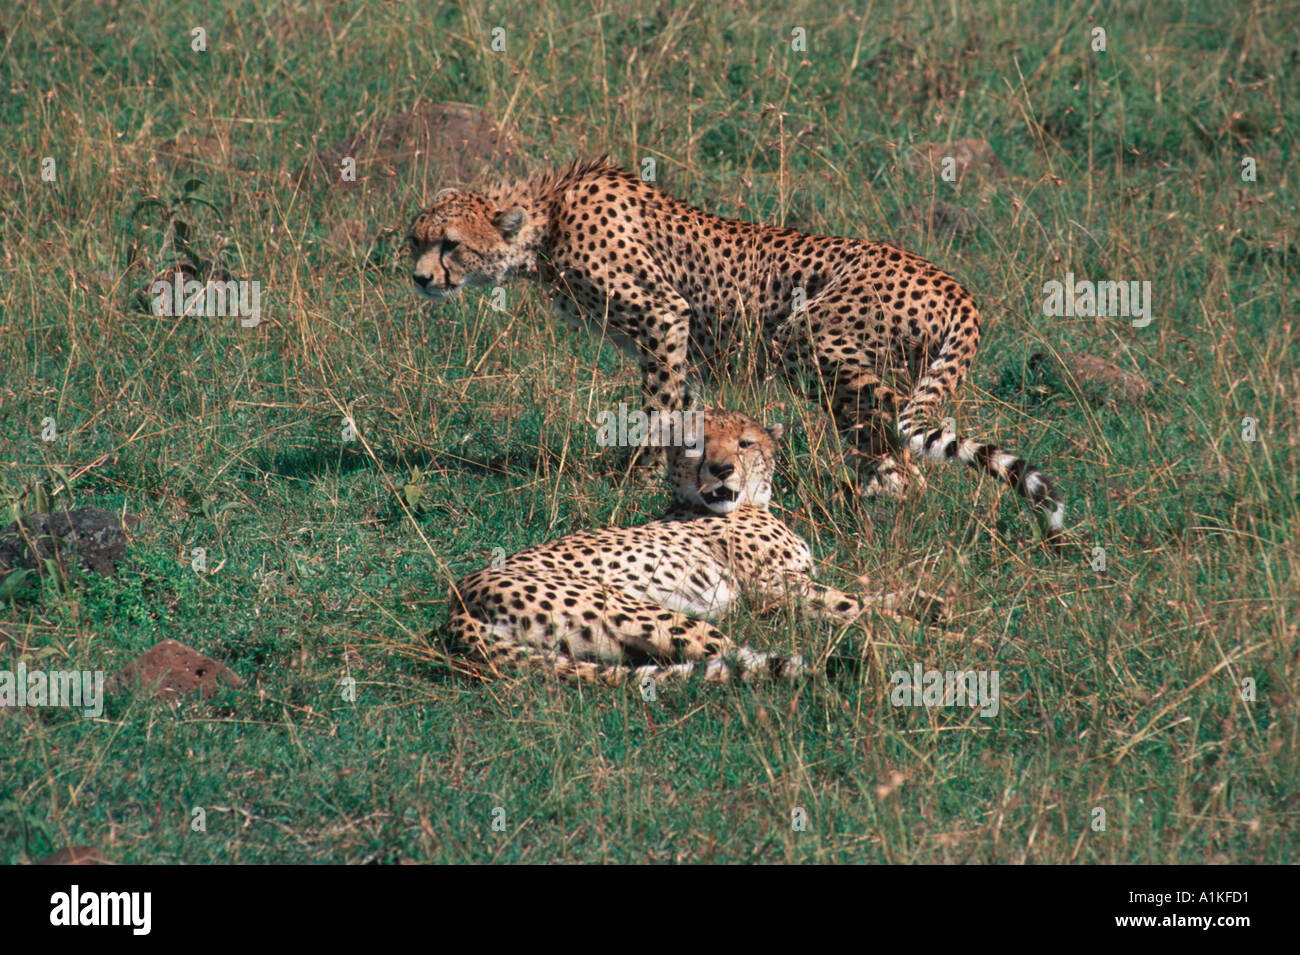 Two wild cheetahs Stock Photo